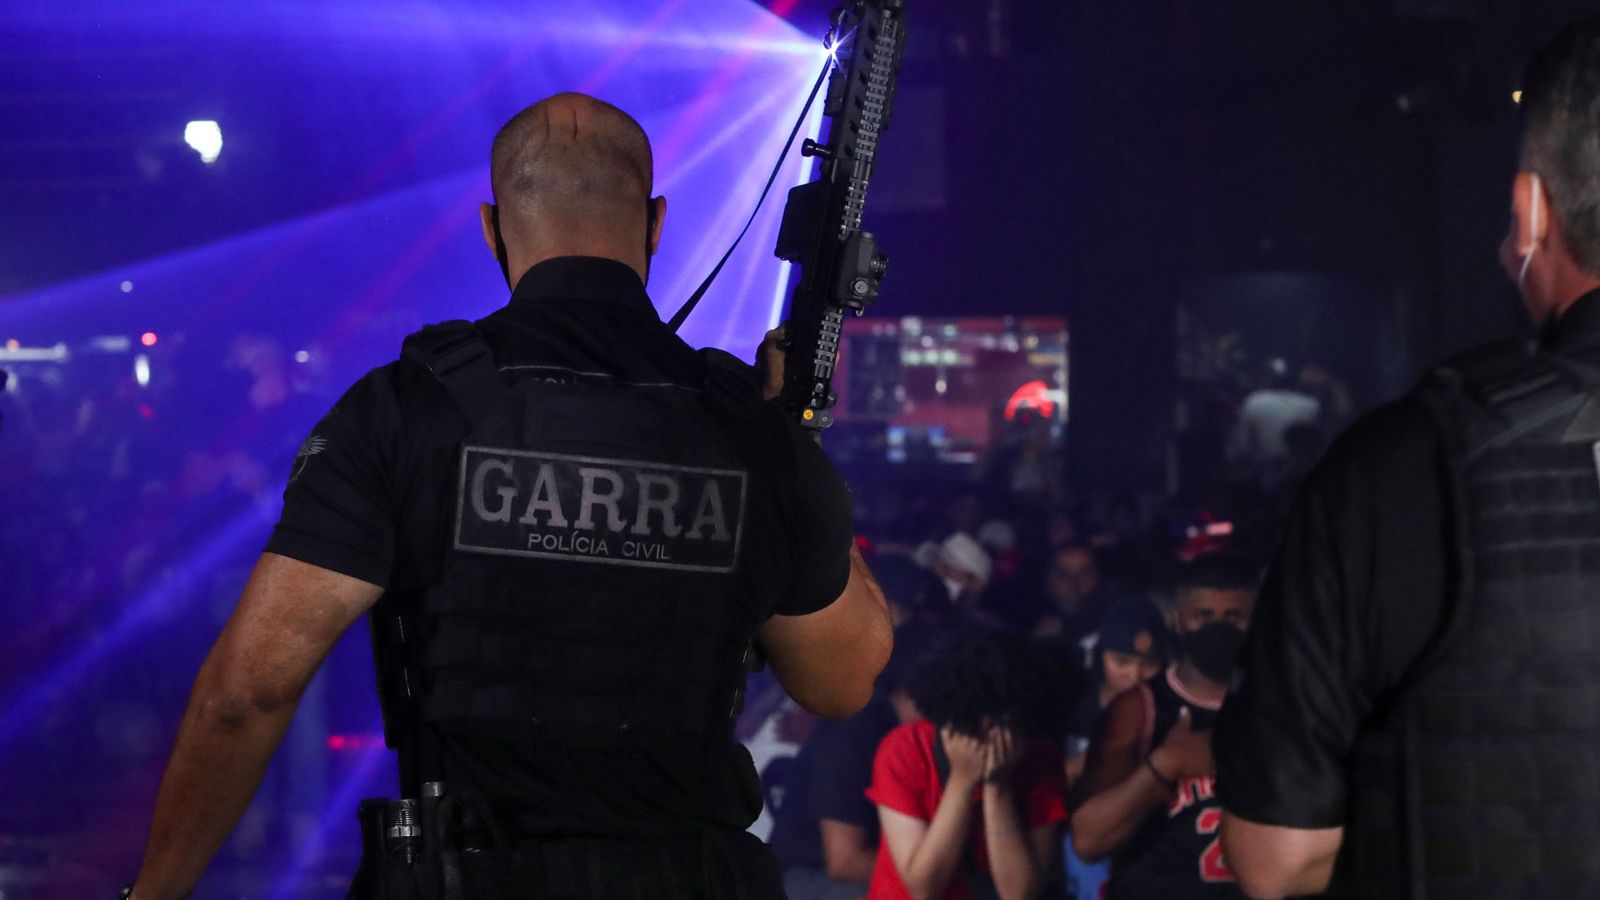 La policía brasileña interviene en una fiesta ilegal en Sao Paulo. (Reuters)